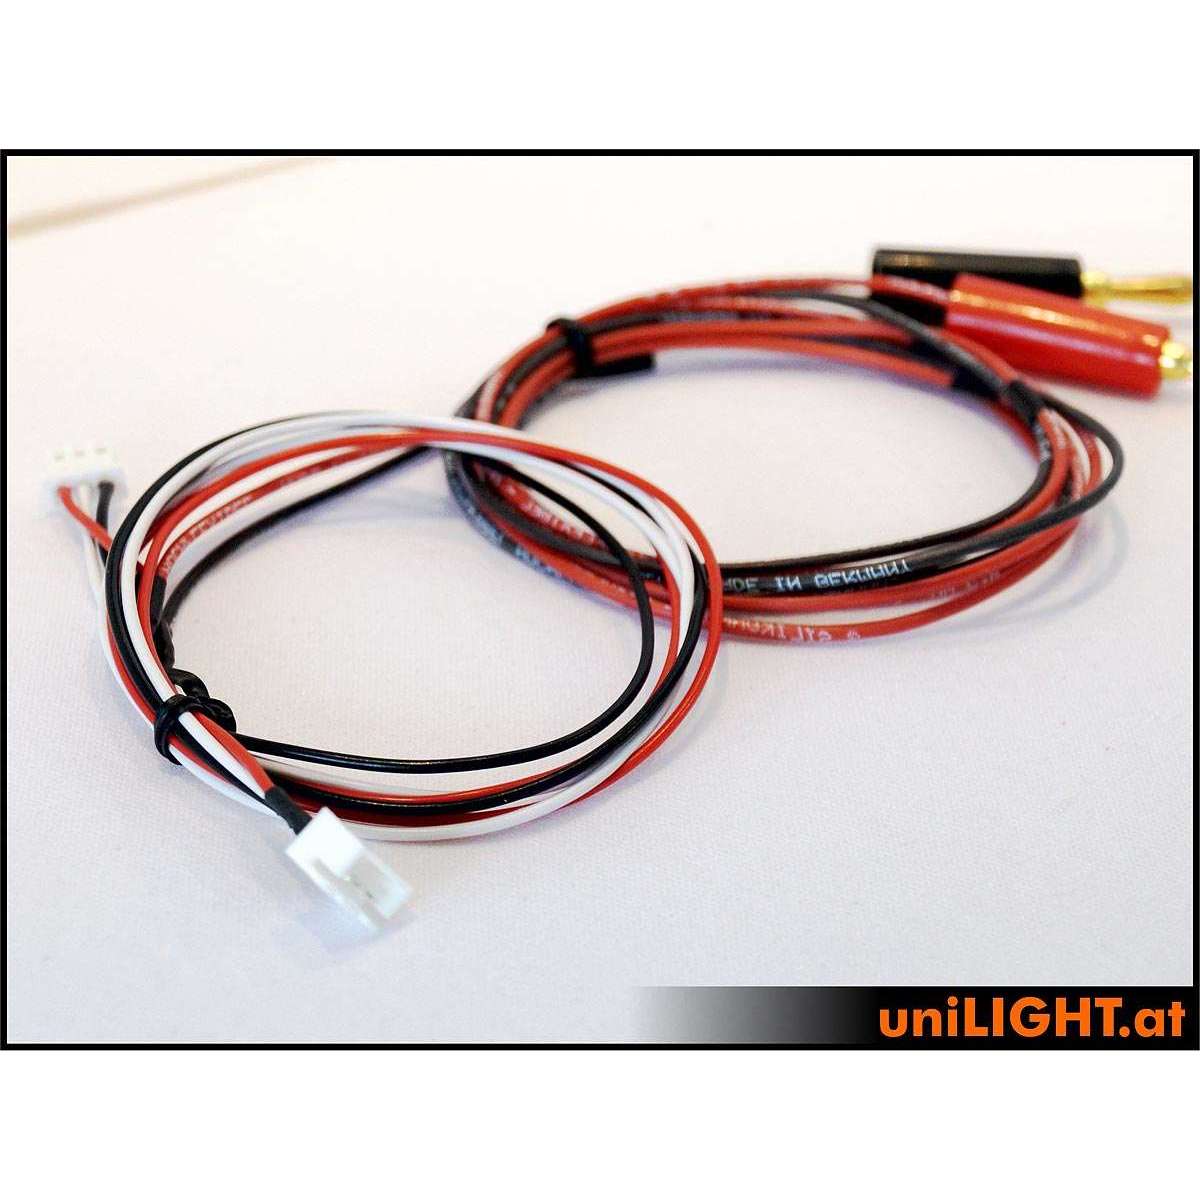 LiPo Balancer recharger cable